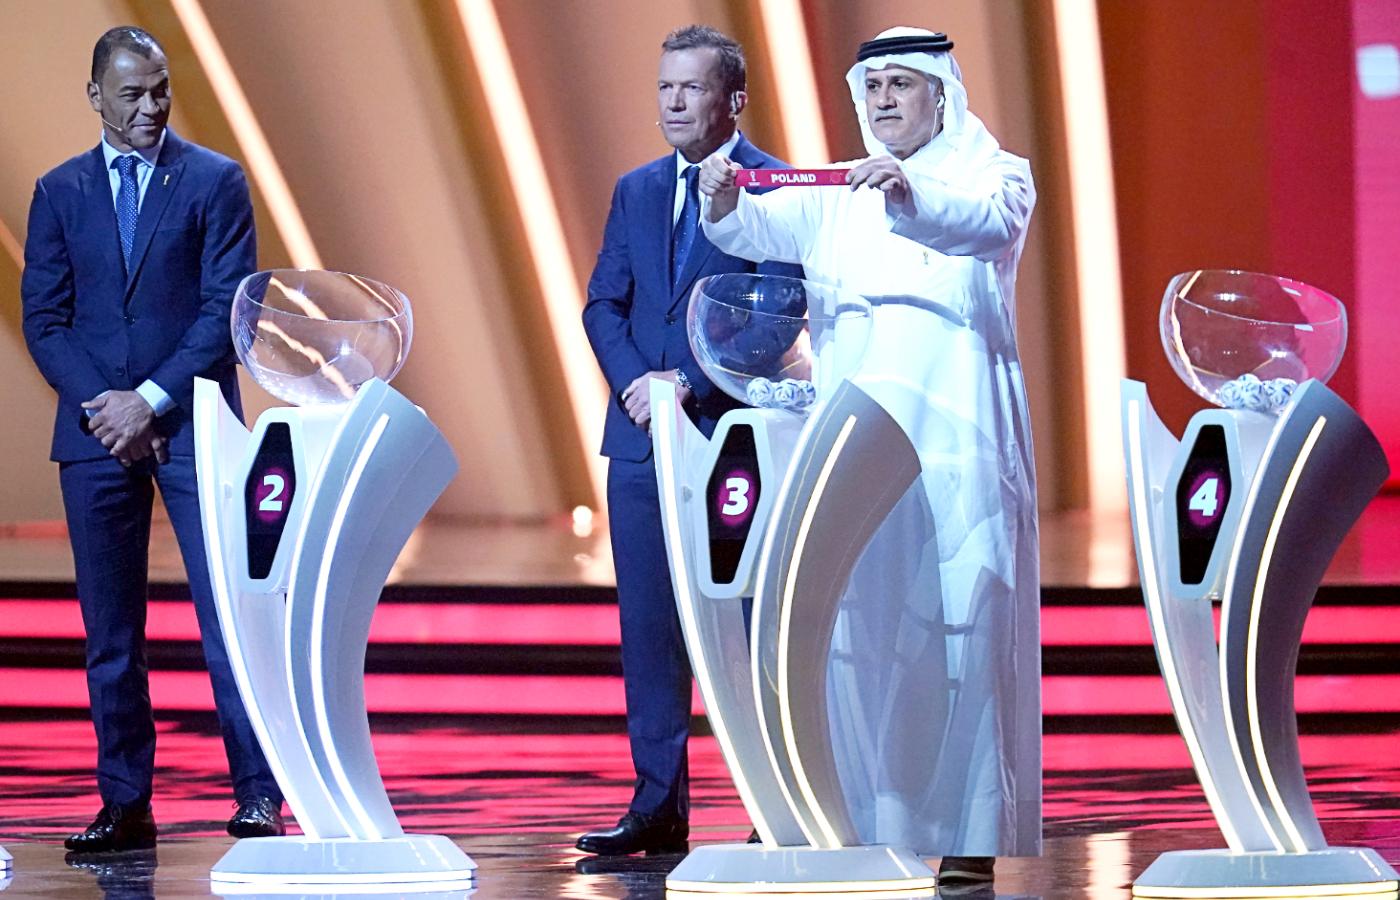 Katar 2022. Losowanie grup mistrzostw świata w piłce nożnej. Polska będzie grała w grupie C z Argentyną, Arabią Saudyjską i Meksykiem.